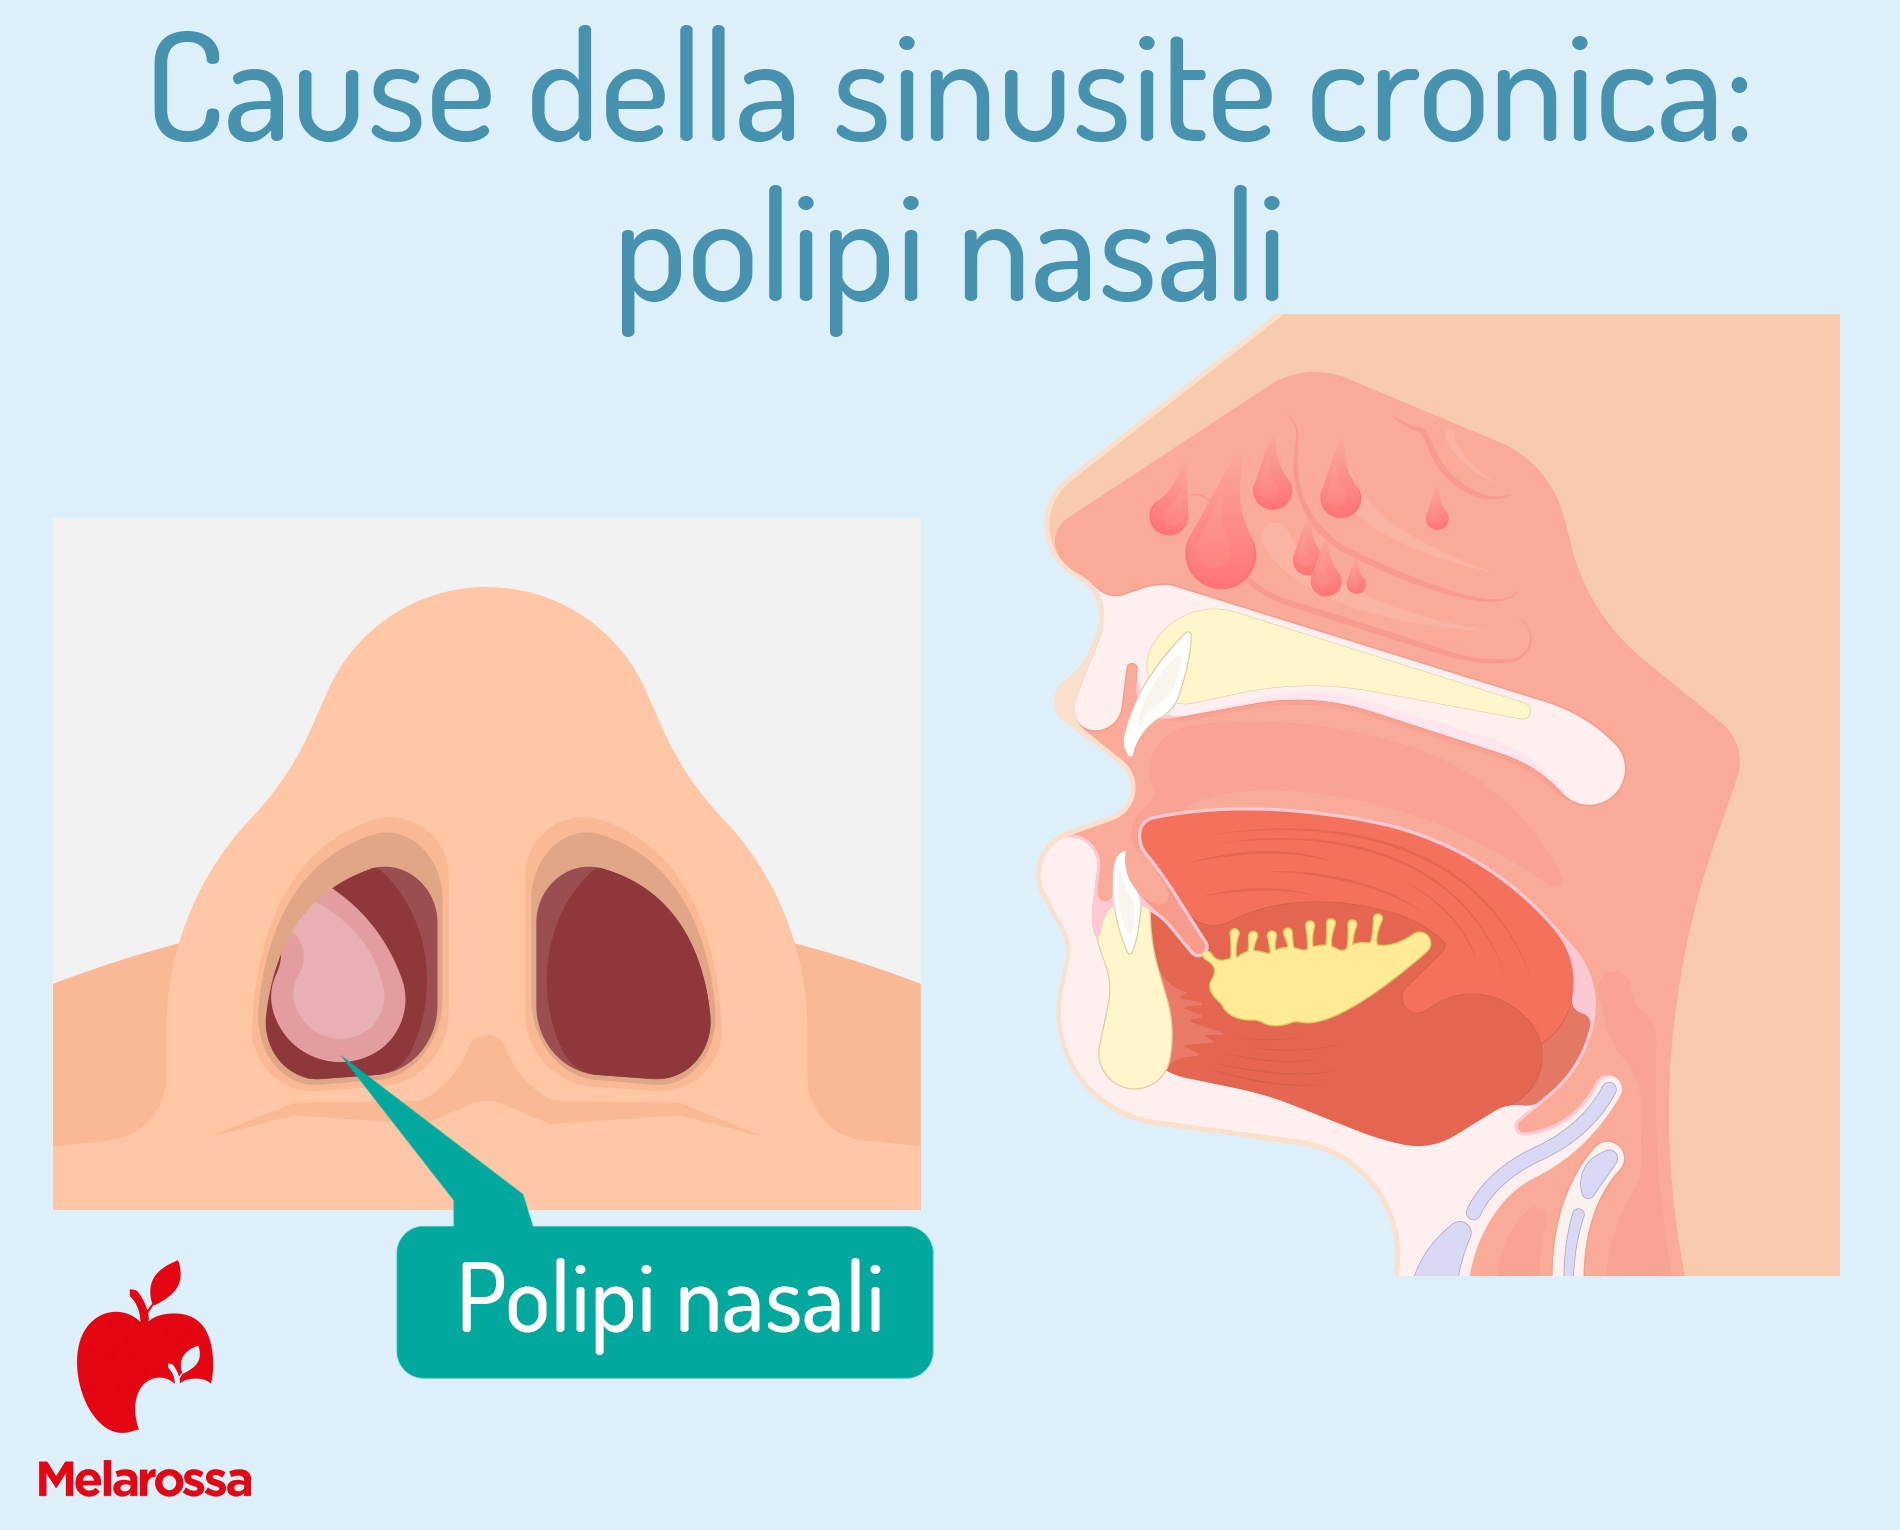 Cause della sinusite cronica: polipi nasali